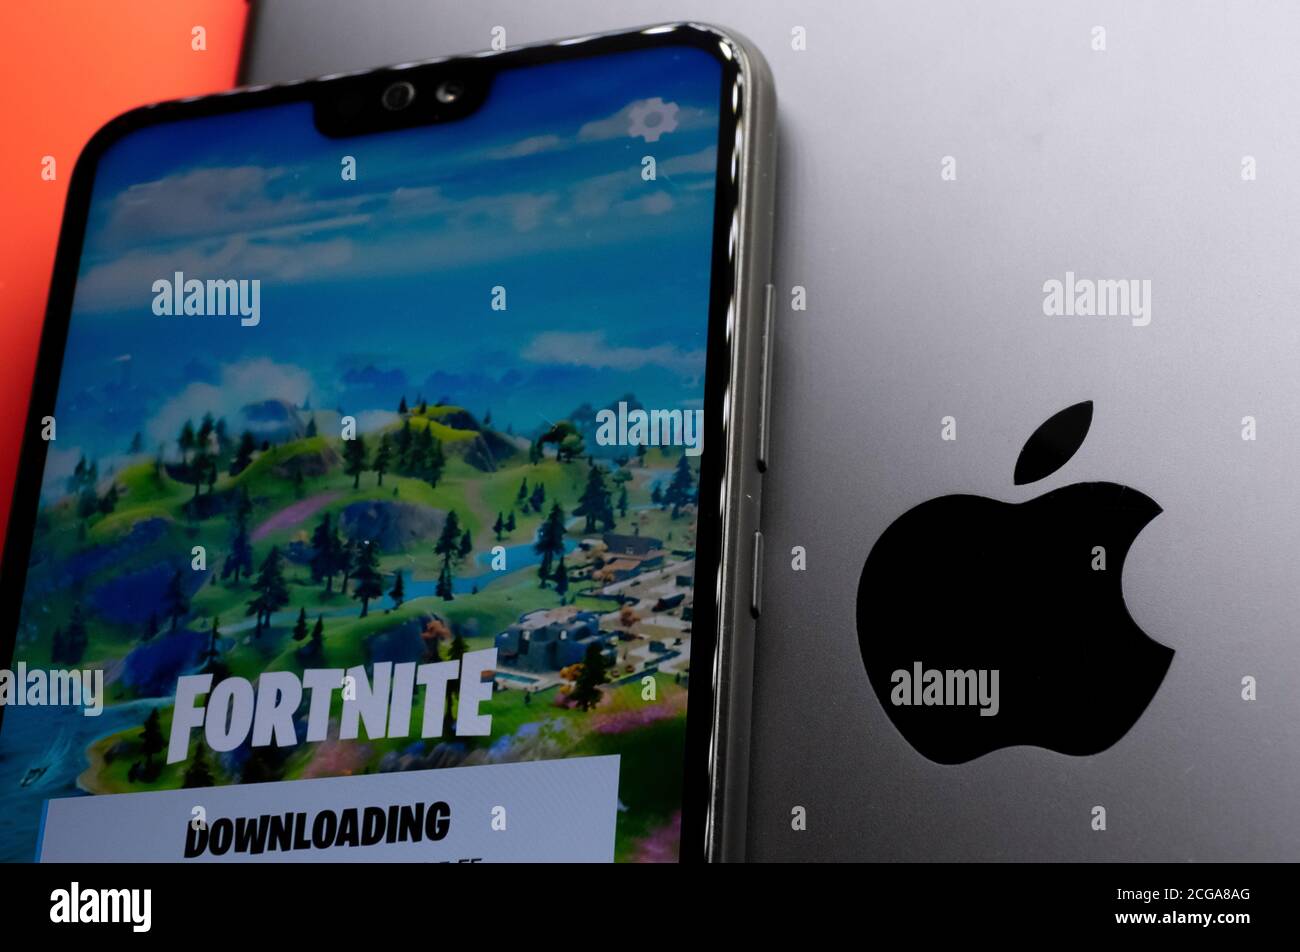 Stone / Reino Unido - 9 de septiembre de 2020: Logotipo de Apple visto en iPad y smartphone con la pantalla de juego Fortnite de Epic Games colocado en la parte superior. Juegos épicos contra Apple Foto de stock